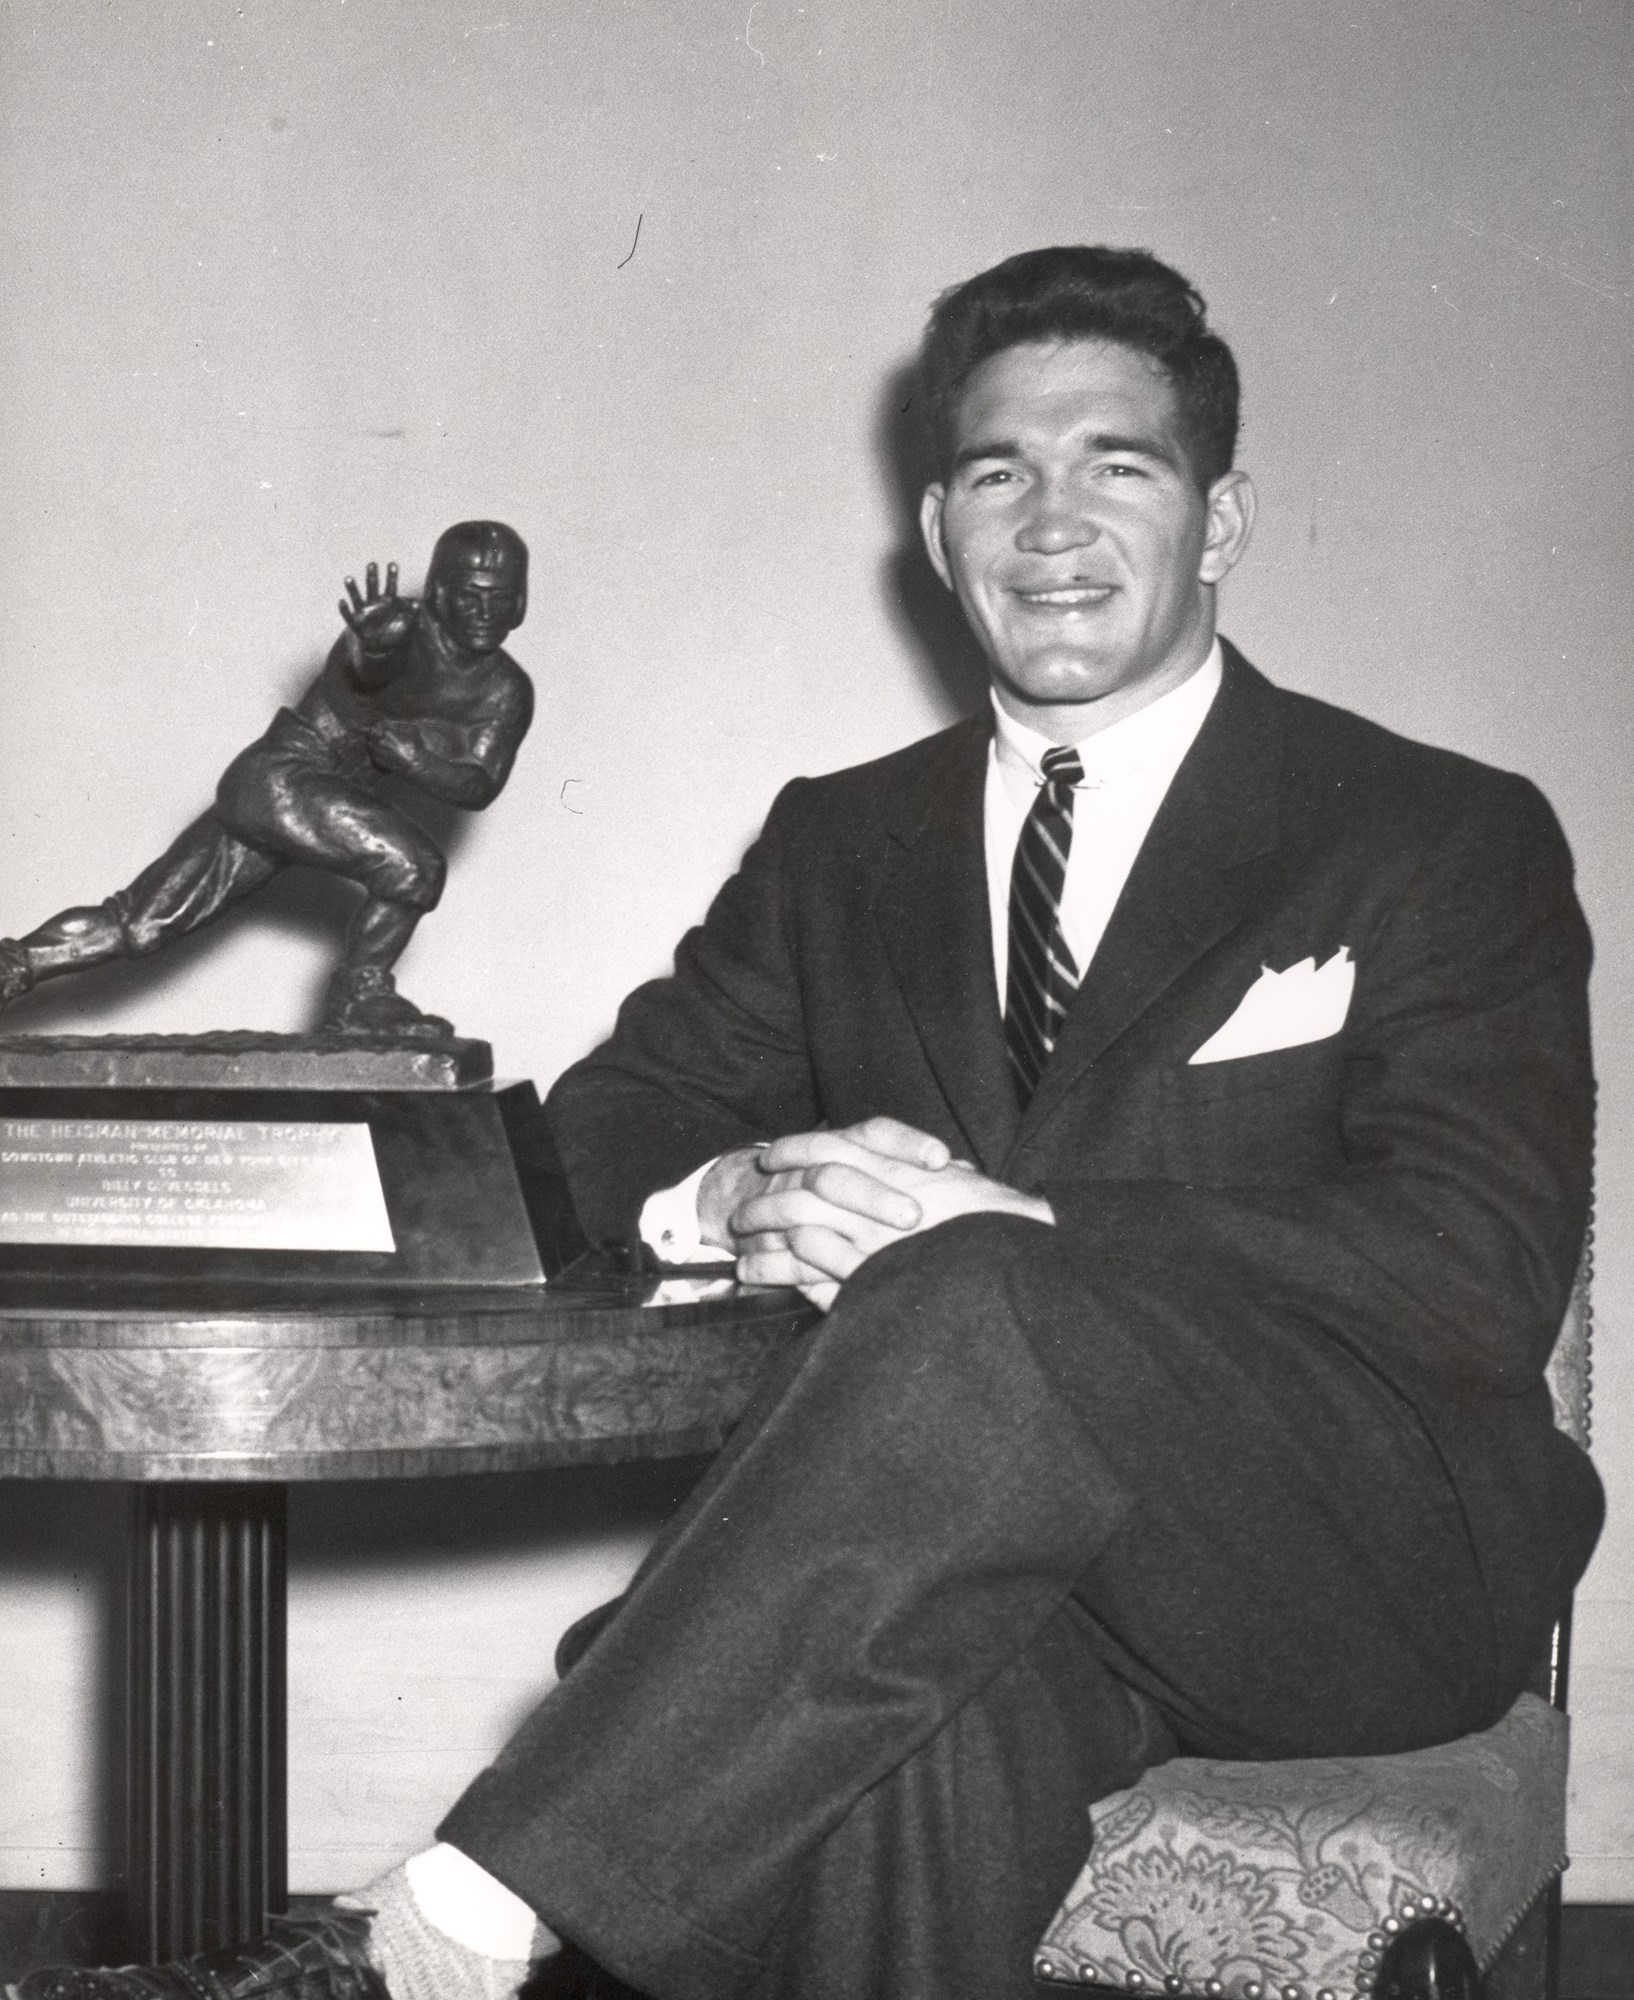 Billy Vessels - 1952 Heisman Trophy Winner